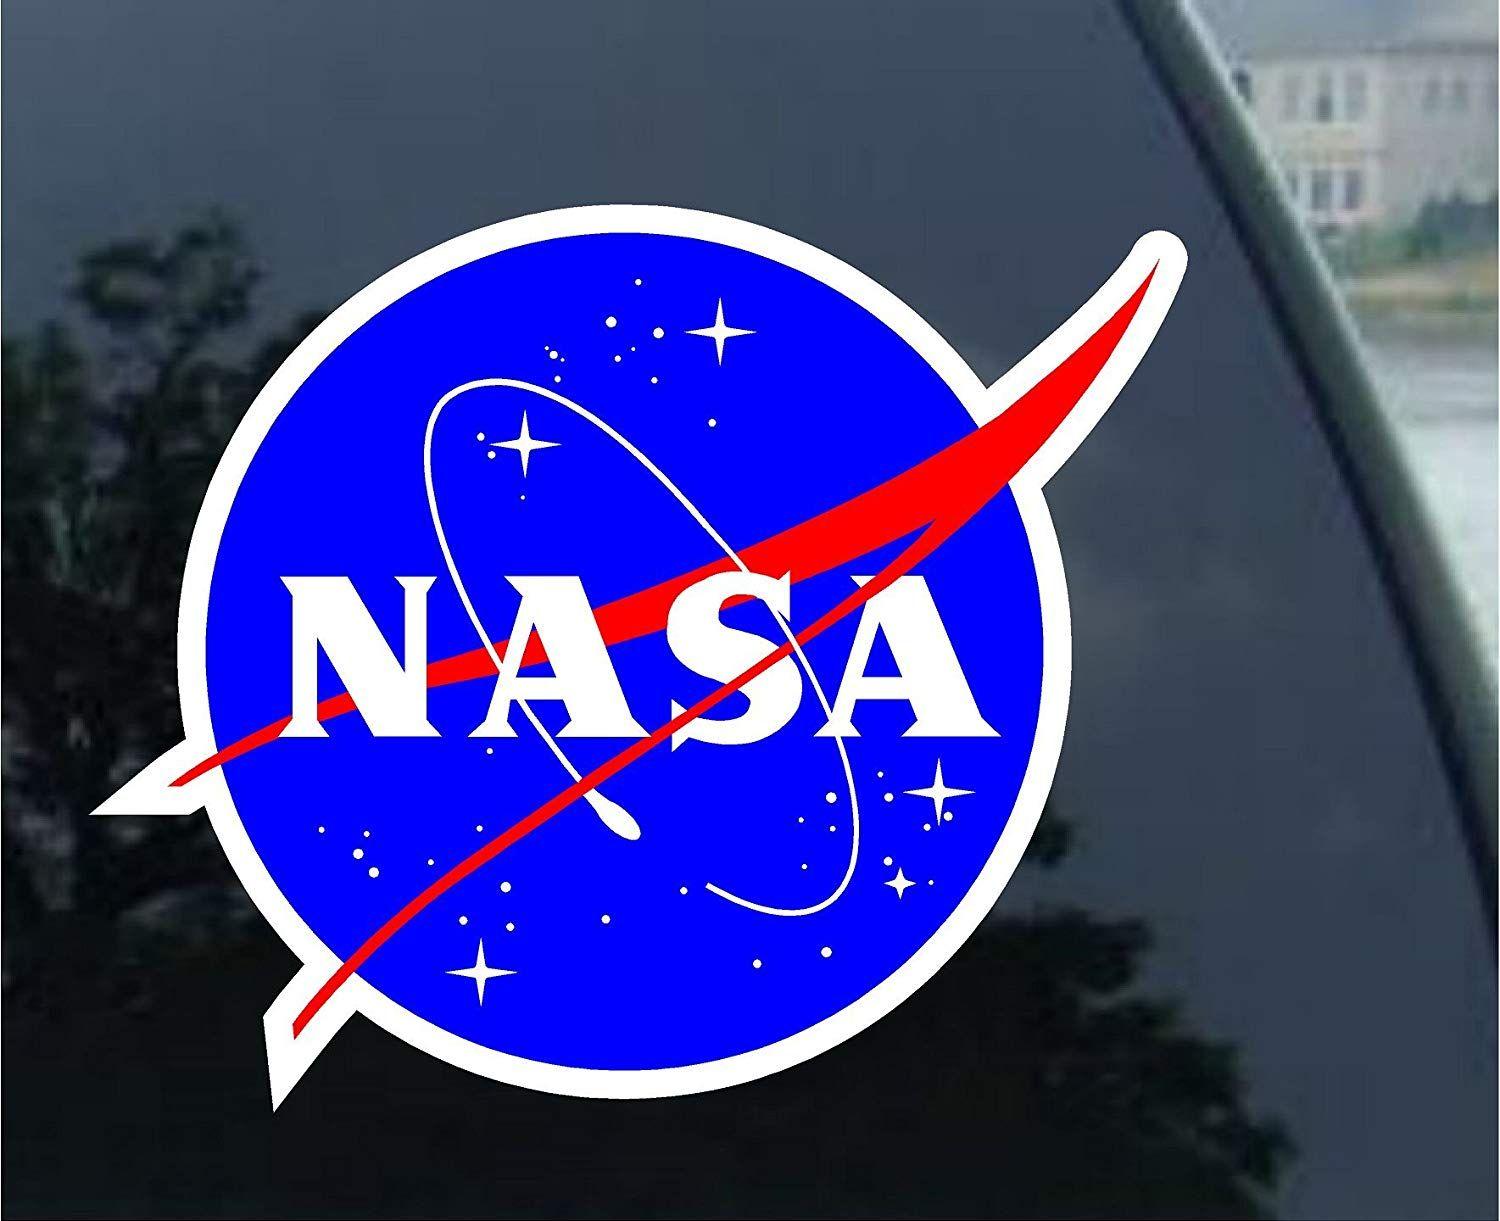 High Quality NASA Logo - Amazon.com: Nasa Seal USA Space Cosmos Logo Vinyl Sticker Decal (2 ...